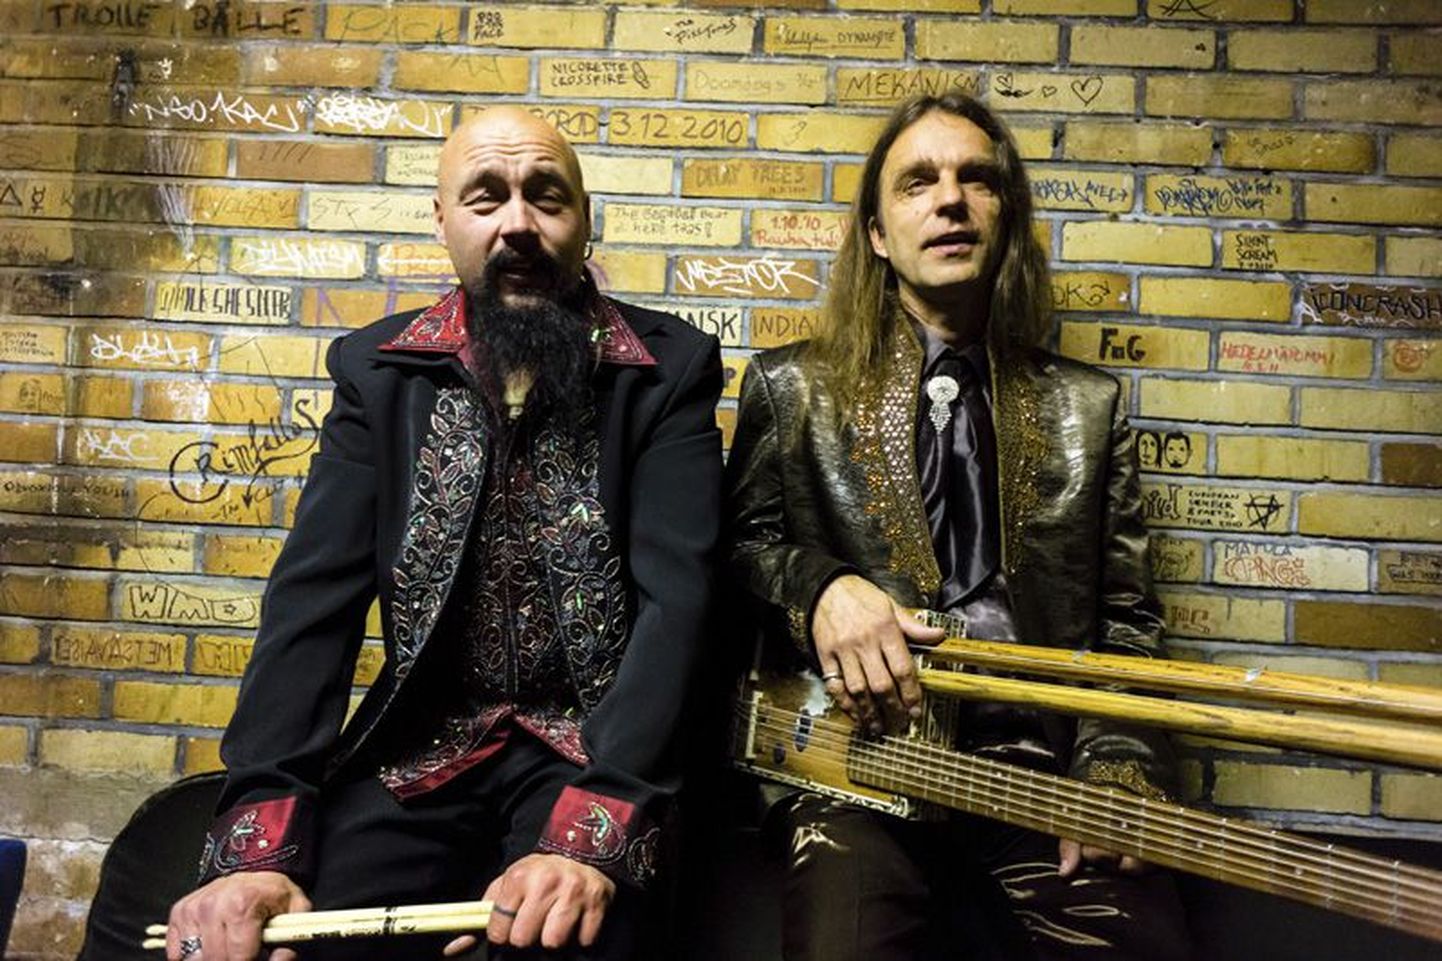 Soome ansambli Black River Bluesman & Bad Mood Hudson muusika kõlab Kanada muusikaajakirja hinnangul nii, nagu mängiks bluusi Black Sabbath. Veebruaris tulevad mehed Rakverre.